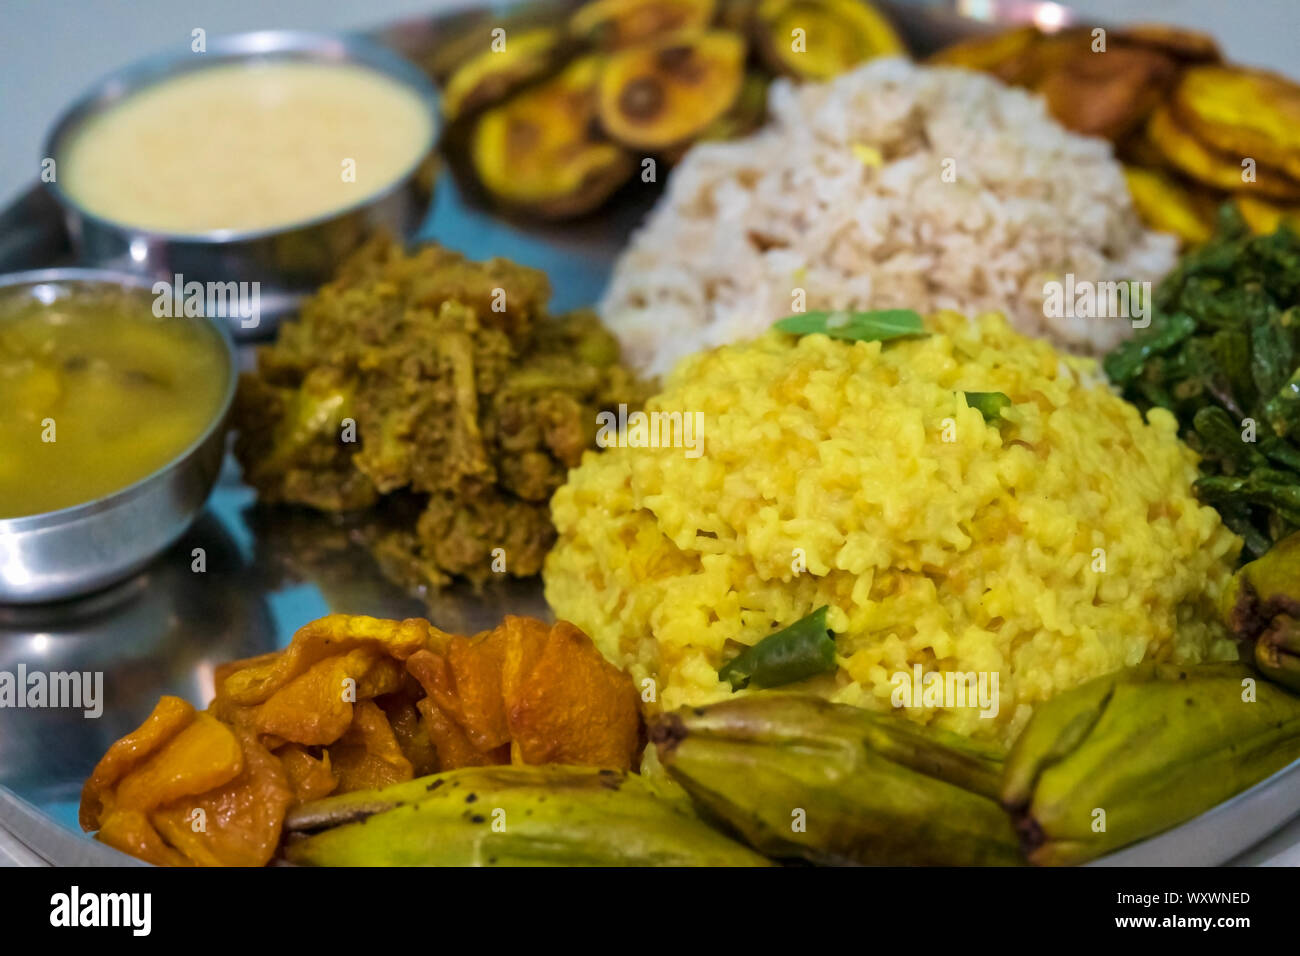 Traditionelle Bengali Gerichte für indisch-hinduistischen Durga Puja oder Pooja festlichen Essen. Eine Platte voller khichdi, pulao, Curry, payesh und einige Pommes. Stockfoto